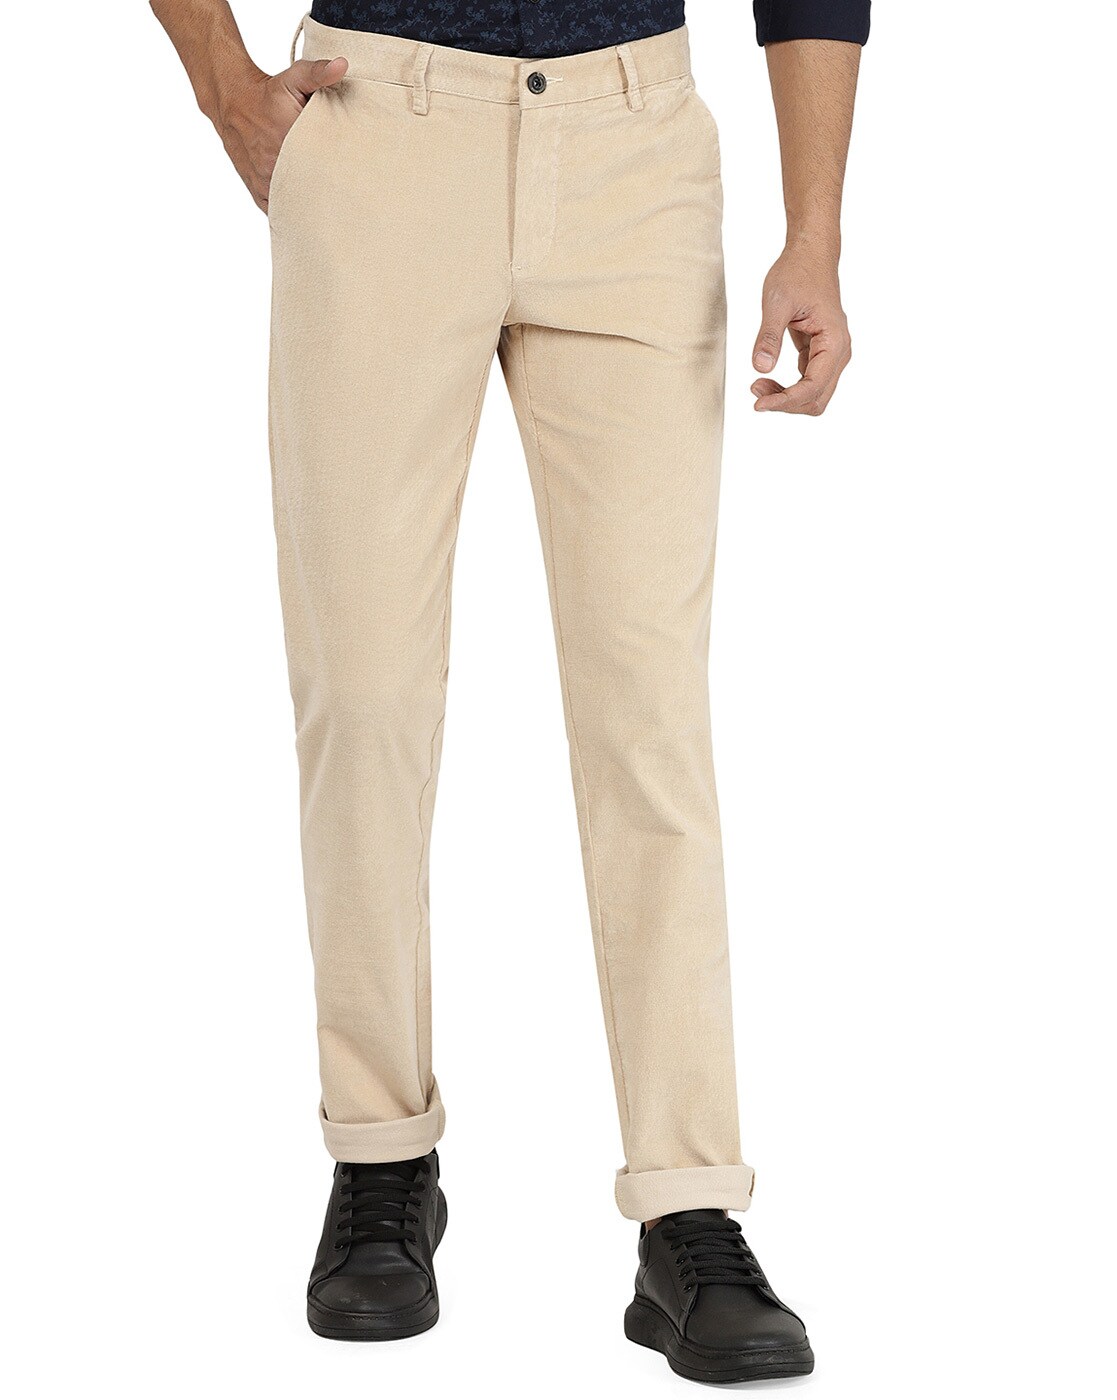 Spykar Camel Khaki Cotton Slim Fit Tapered Length Trousers For Men   vot02bb5p004camelkhaki